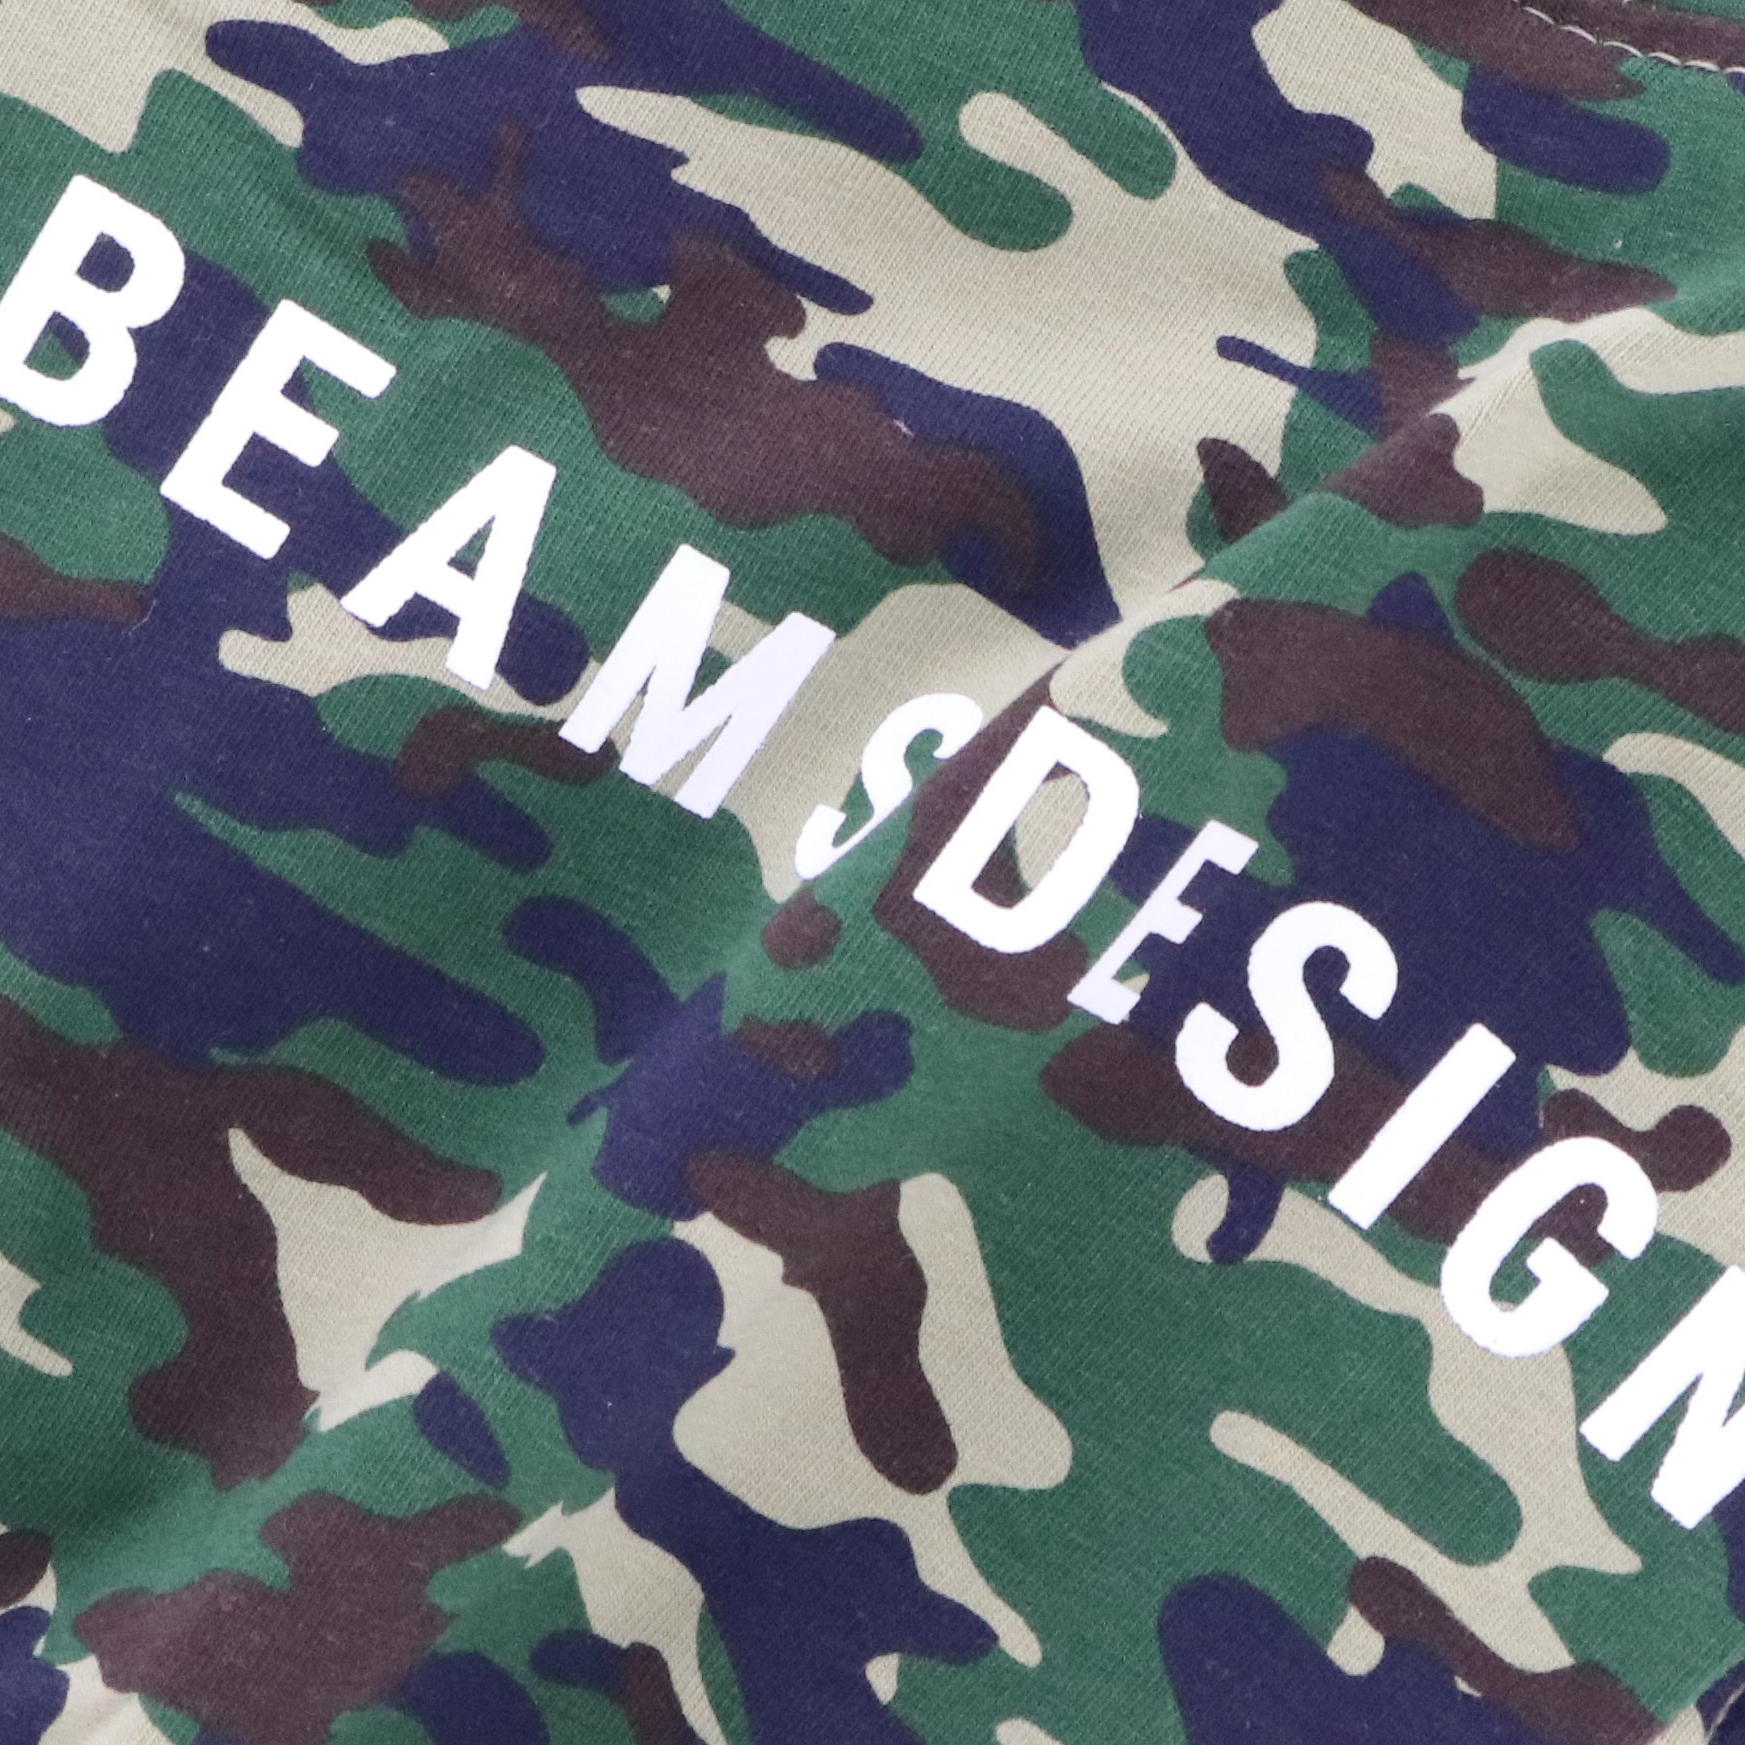 BEAMS DESIGN（ビームス デザイン）スタンダードシャツ カモフラージュ柄